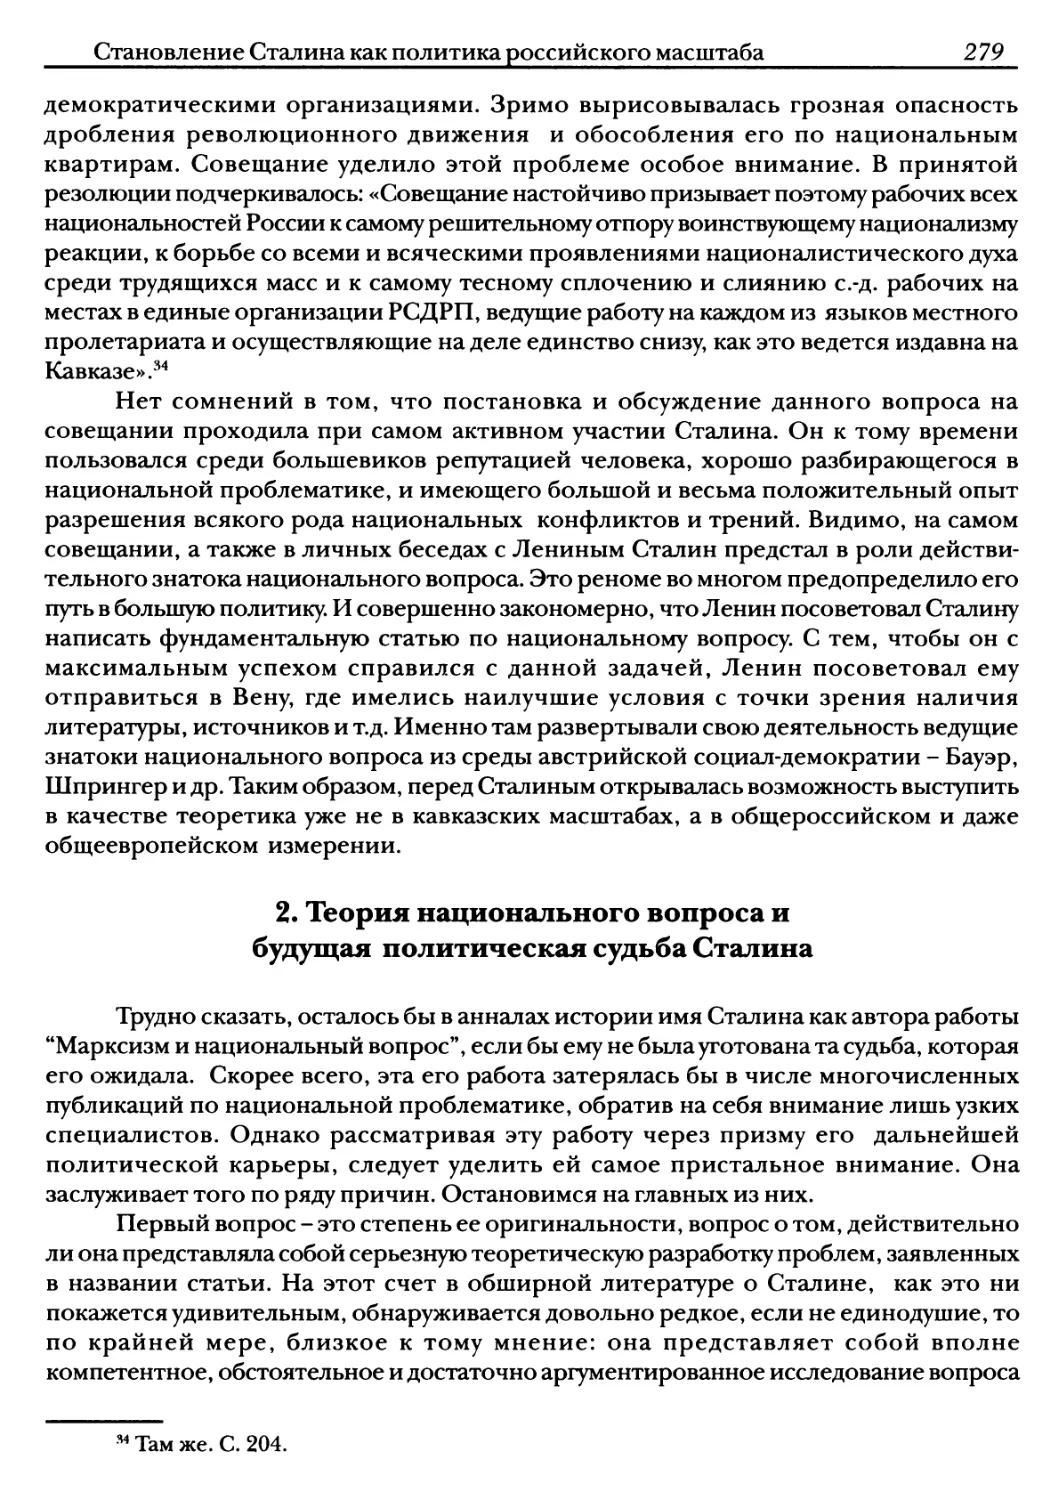 2. Теория национального вопроса и будущая политическая судьба Сталина